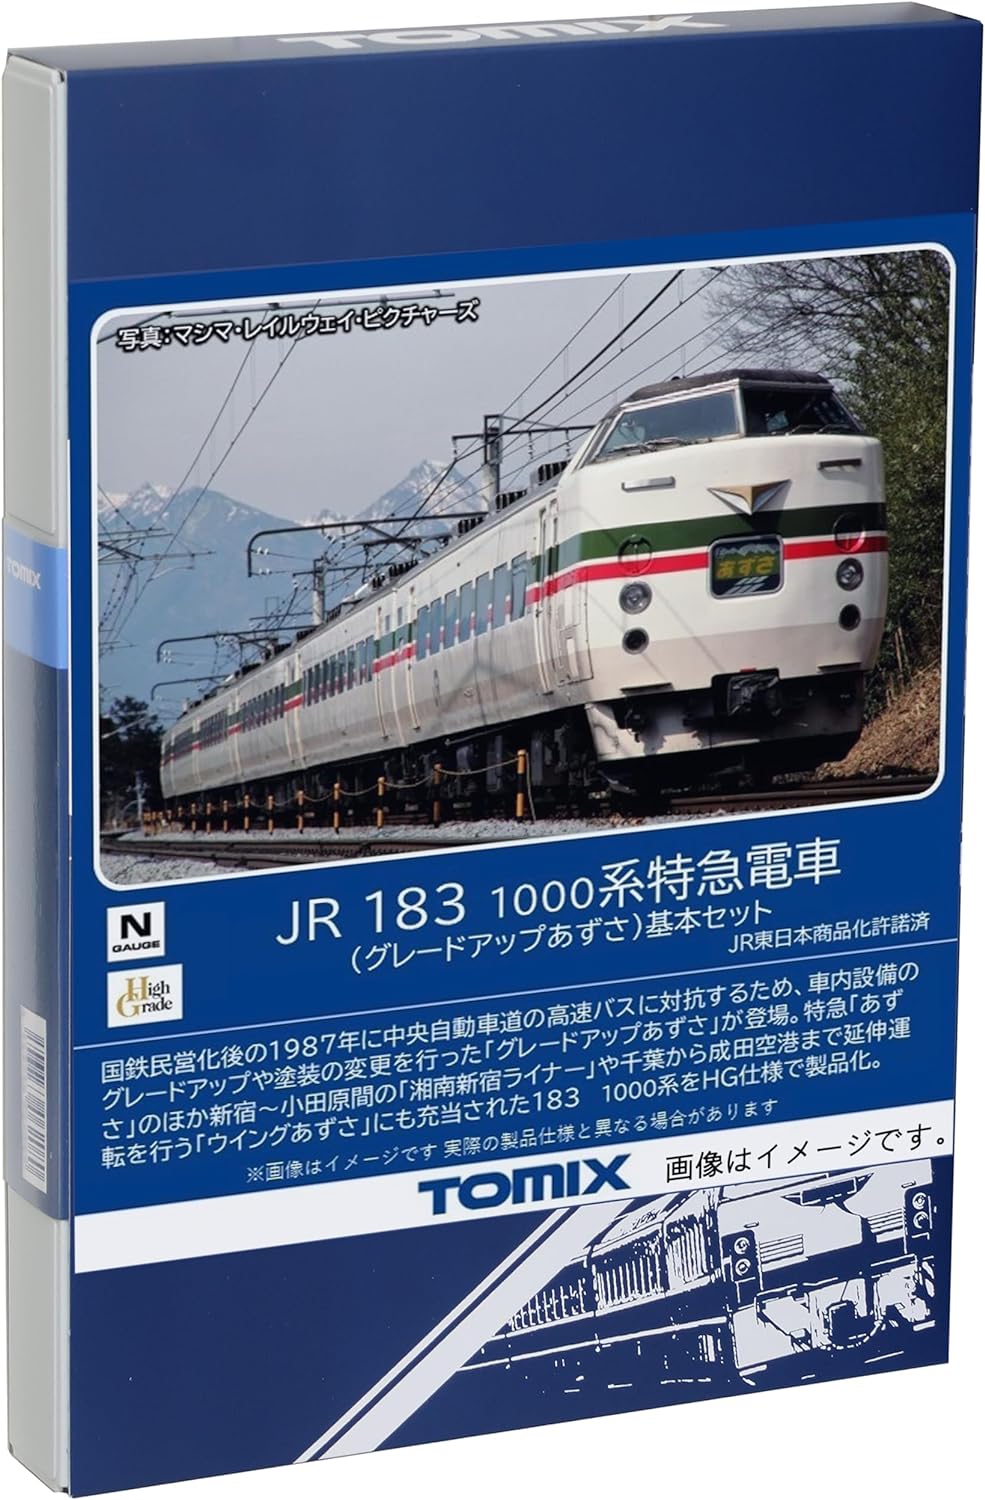 TOMIX 98540 N Gauge JR 183 1000 Series Upgrade Azusa Basic Set Railway Model Train